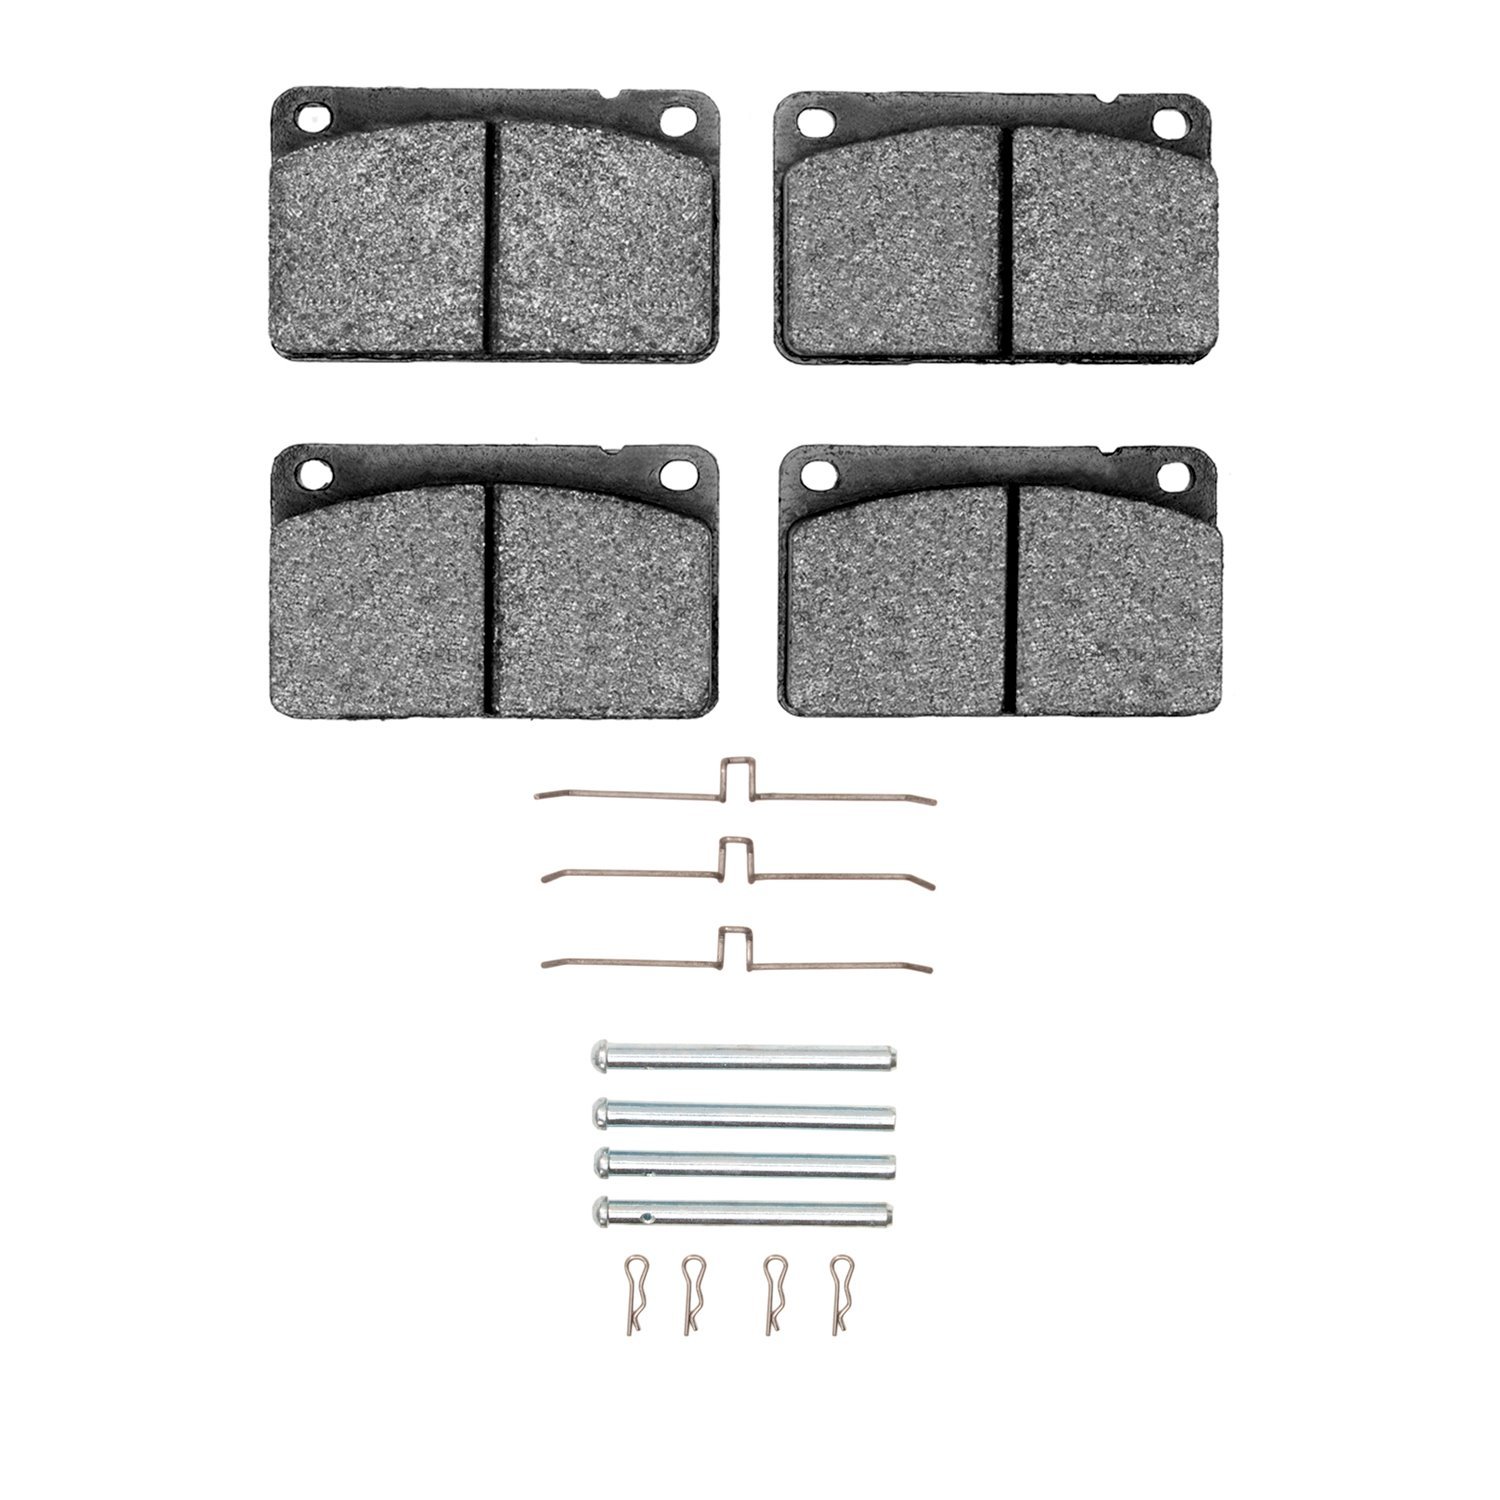 Semi-Metallic Brake Pads & Hardware Kit, 1967-1987 Volvo, Position: Front